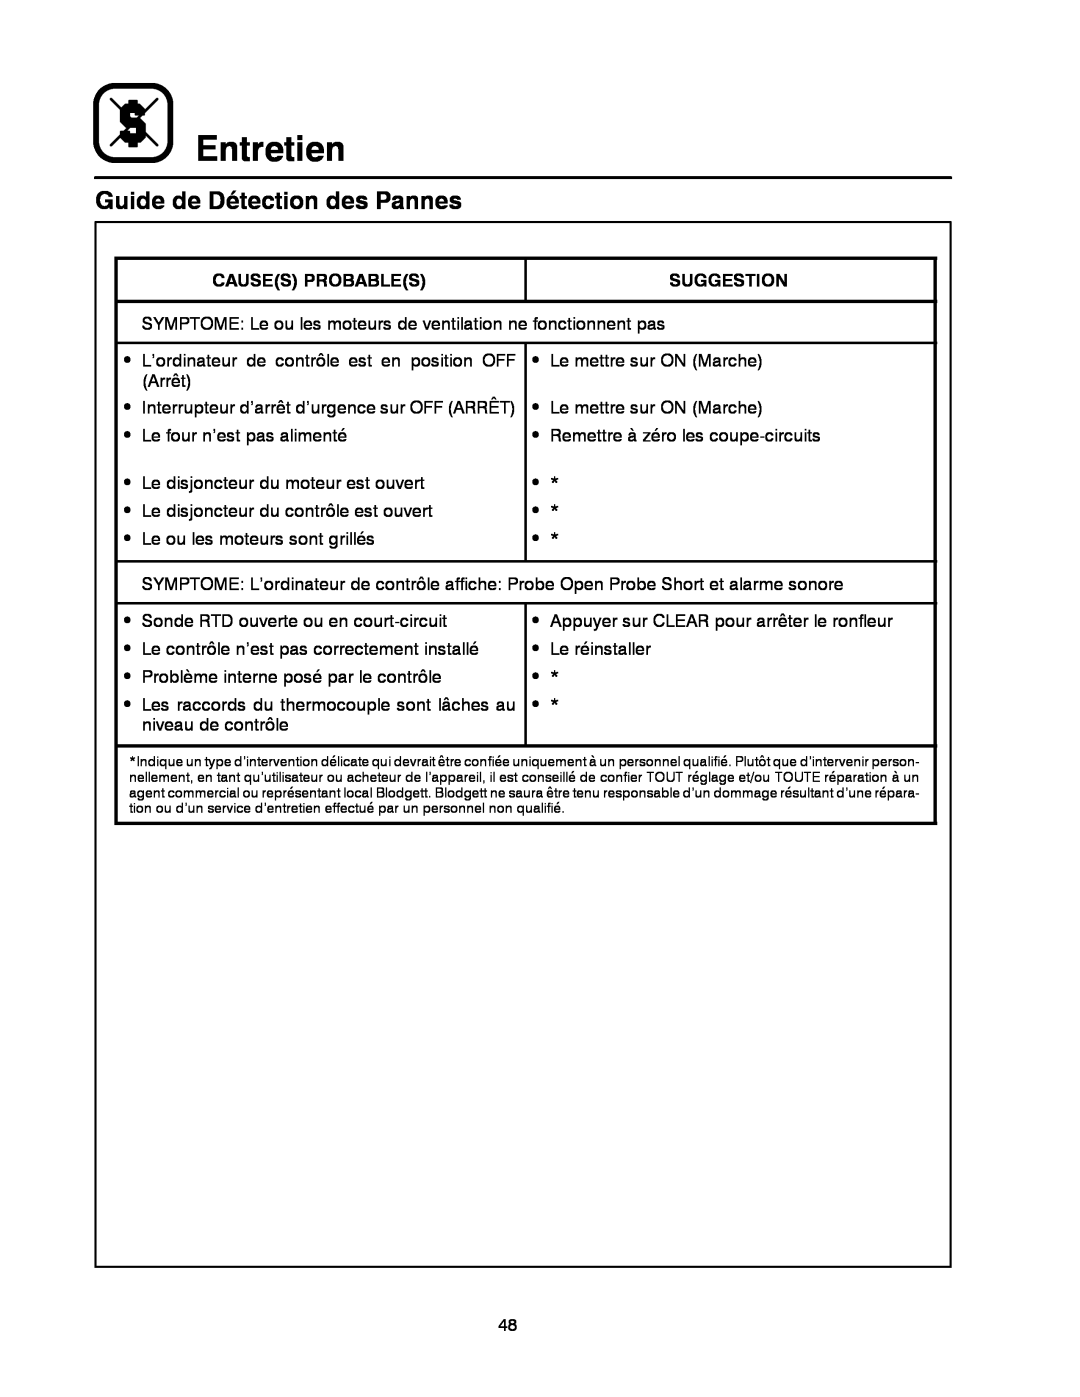 Blodgett MT3855G-G manual Guide de Détection des Pannes, Entretien, Causes Probables, Suggestion 